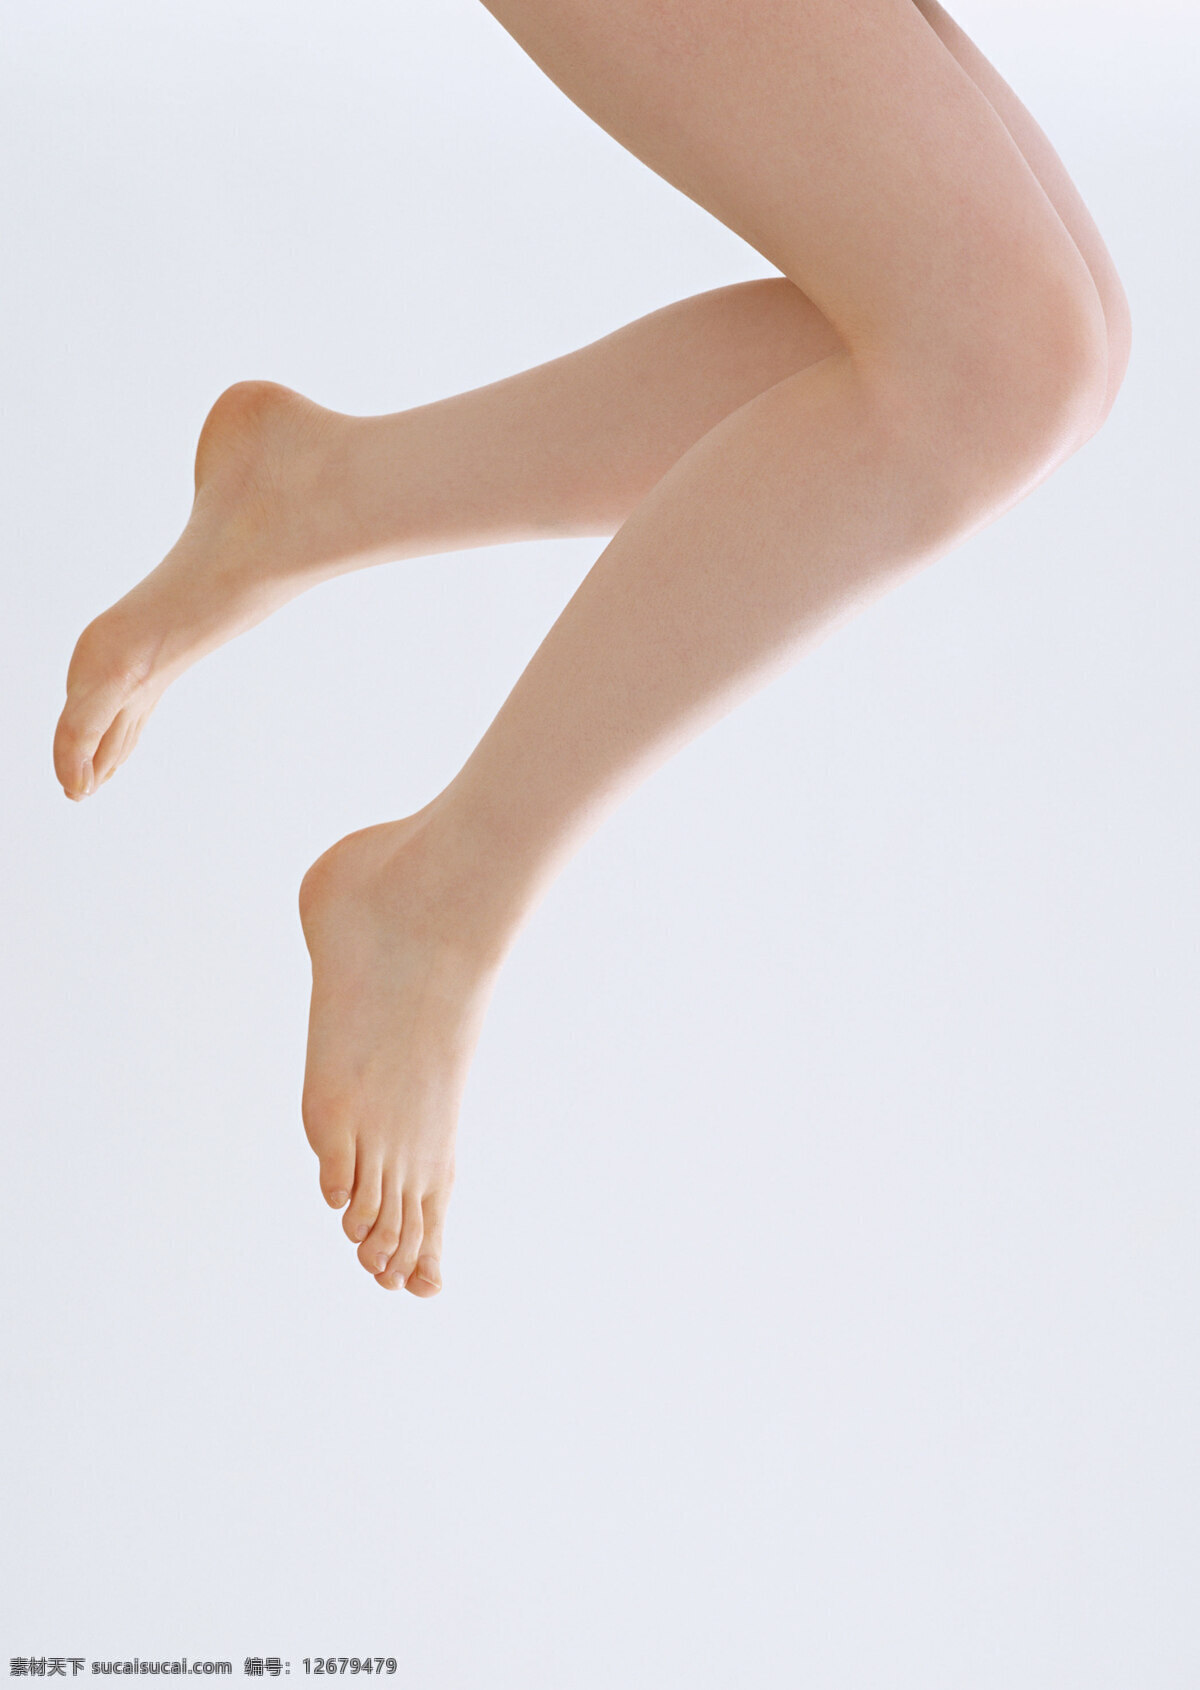 双脚 足 脚 腿 足部 人体部位 健康 局部写真 局部特写 女性 人体线条 柔美 人物图库 女性女人 摄影图库